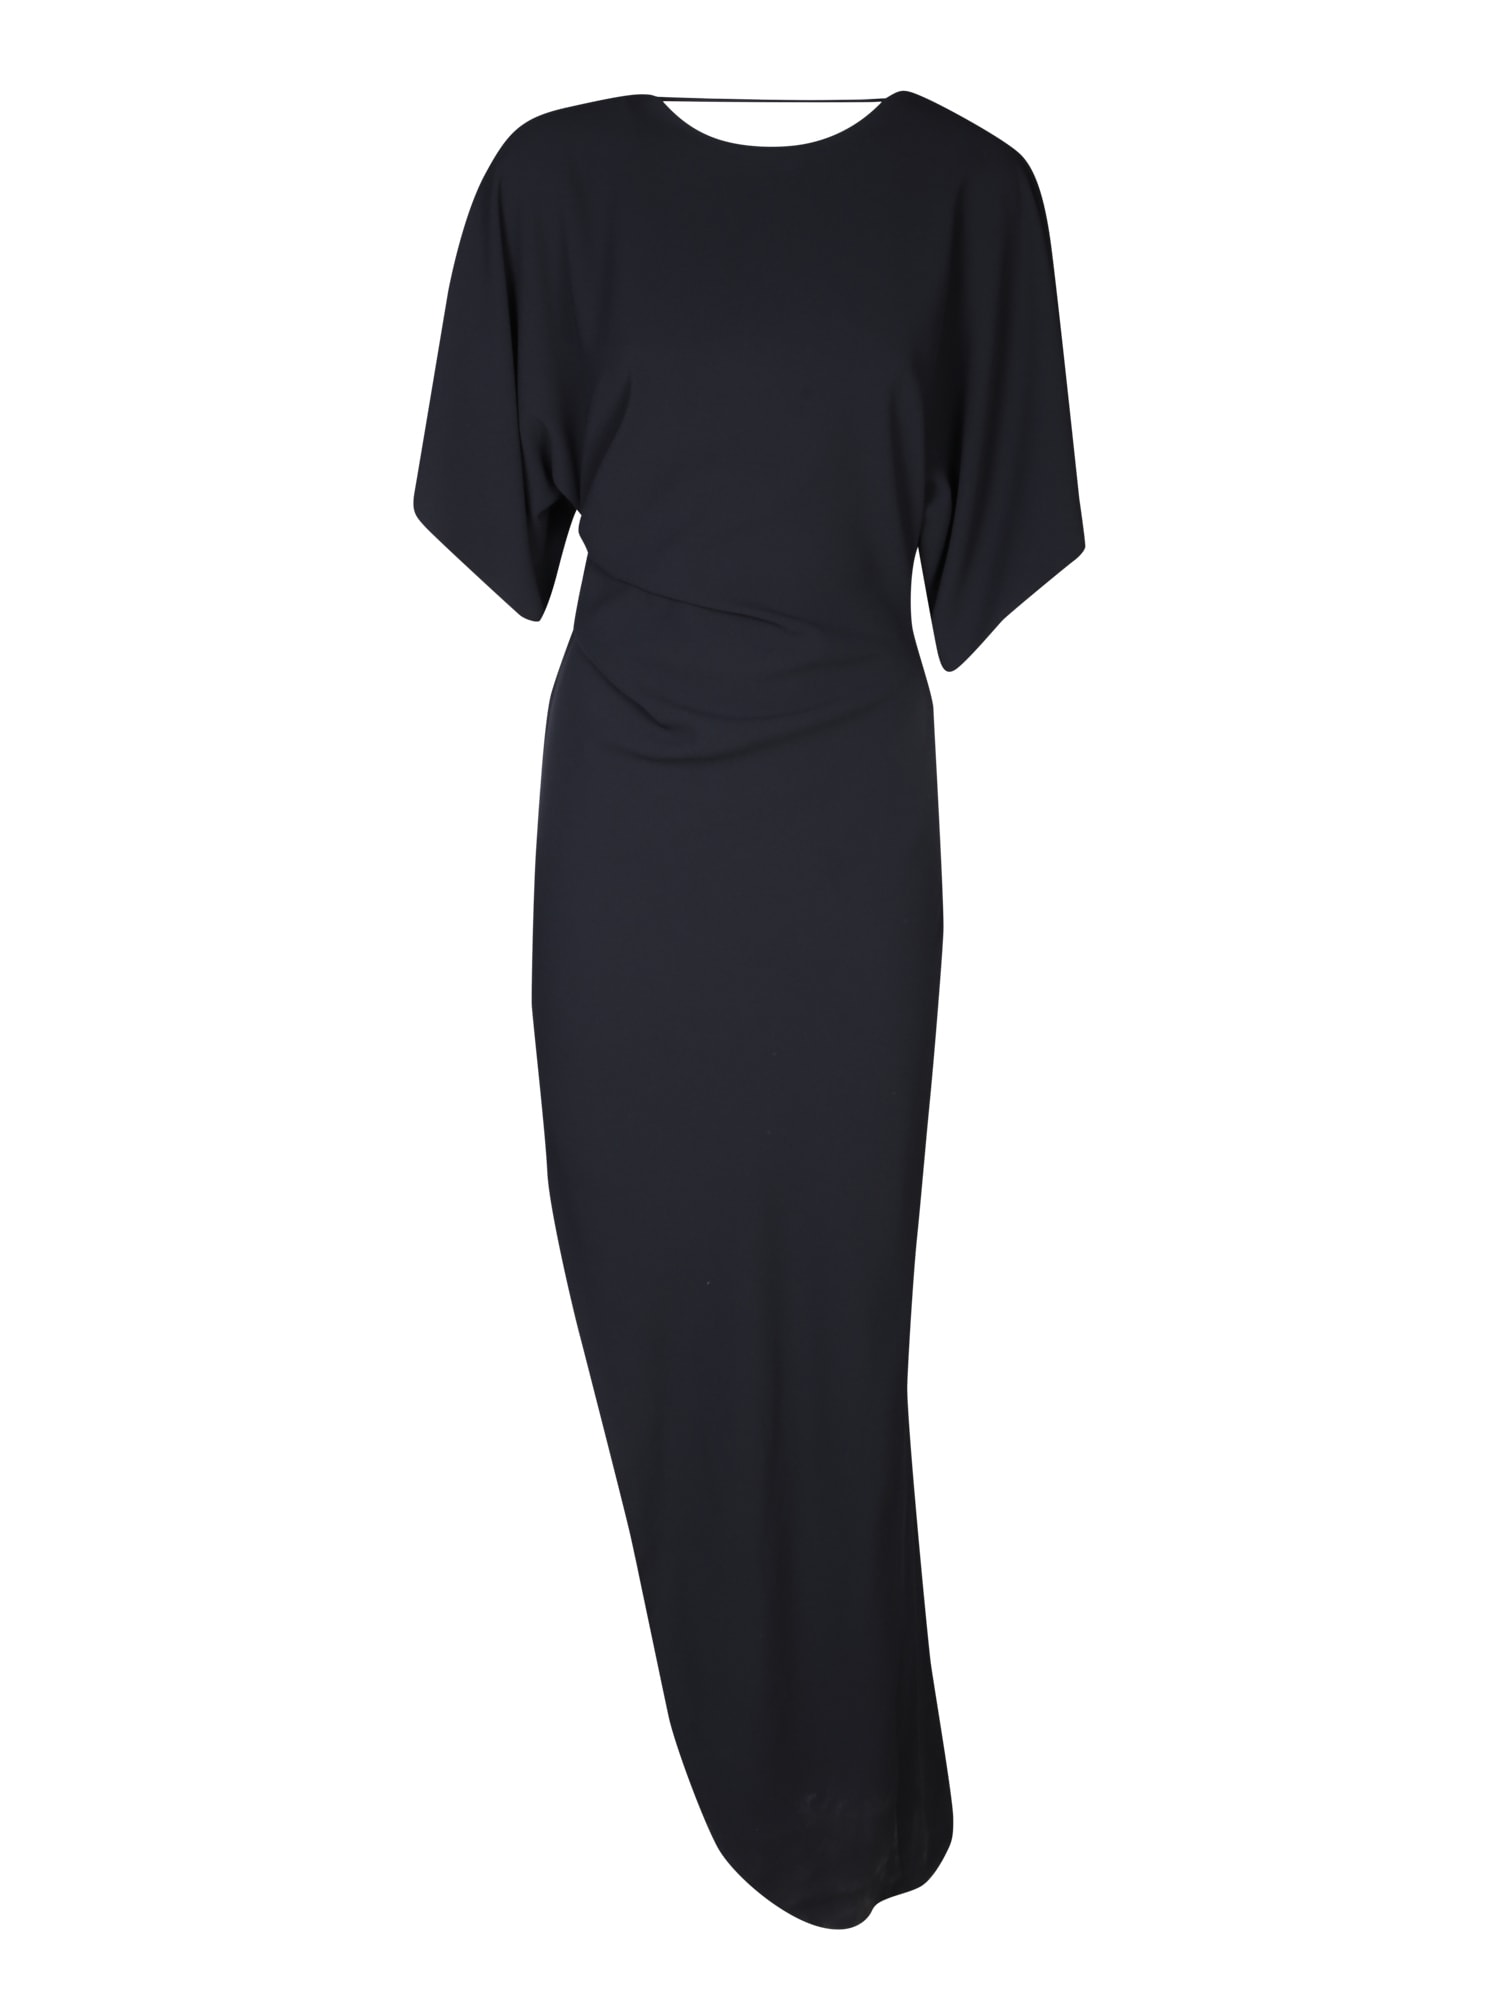 Savita Black Asymmetric Long Dress